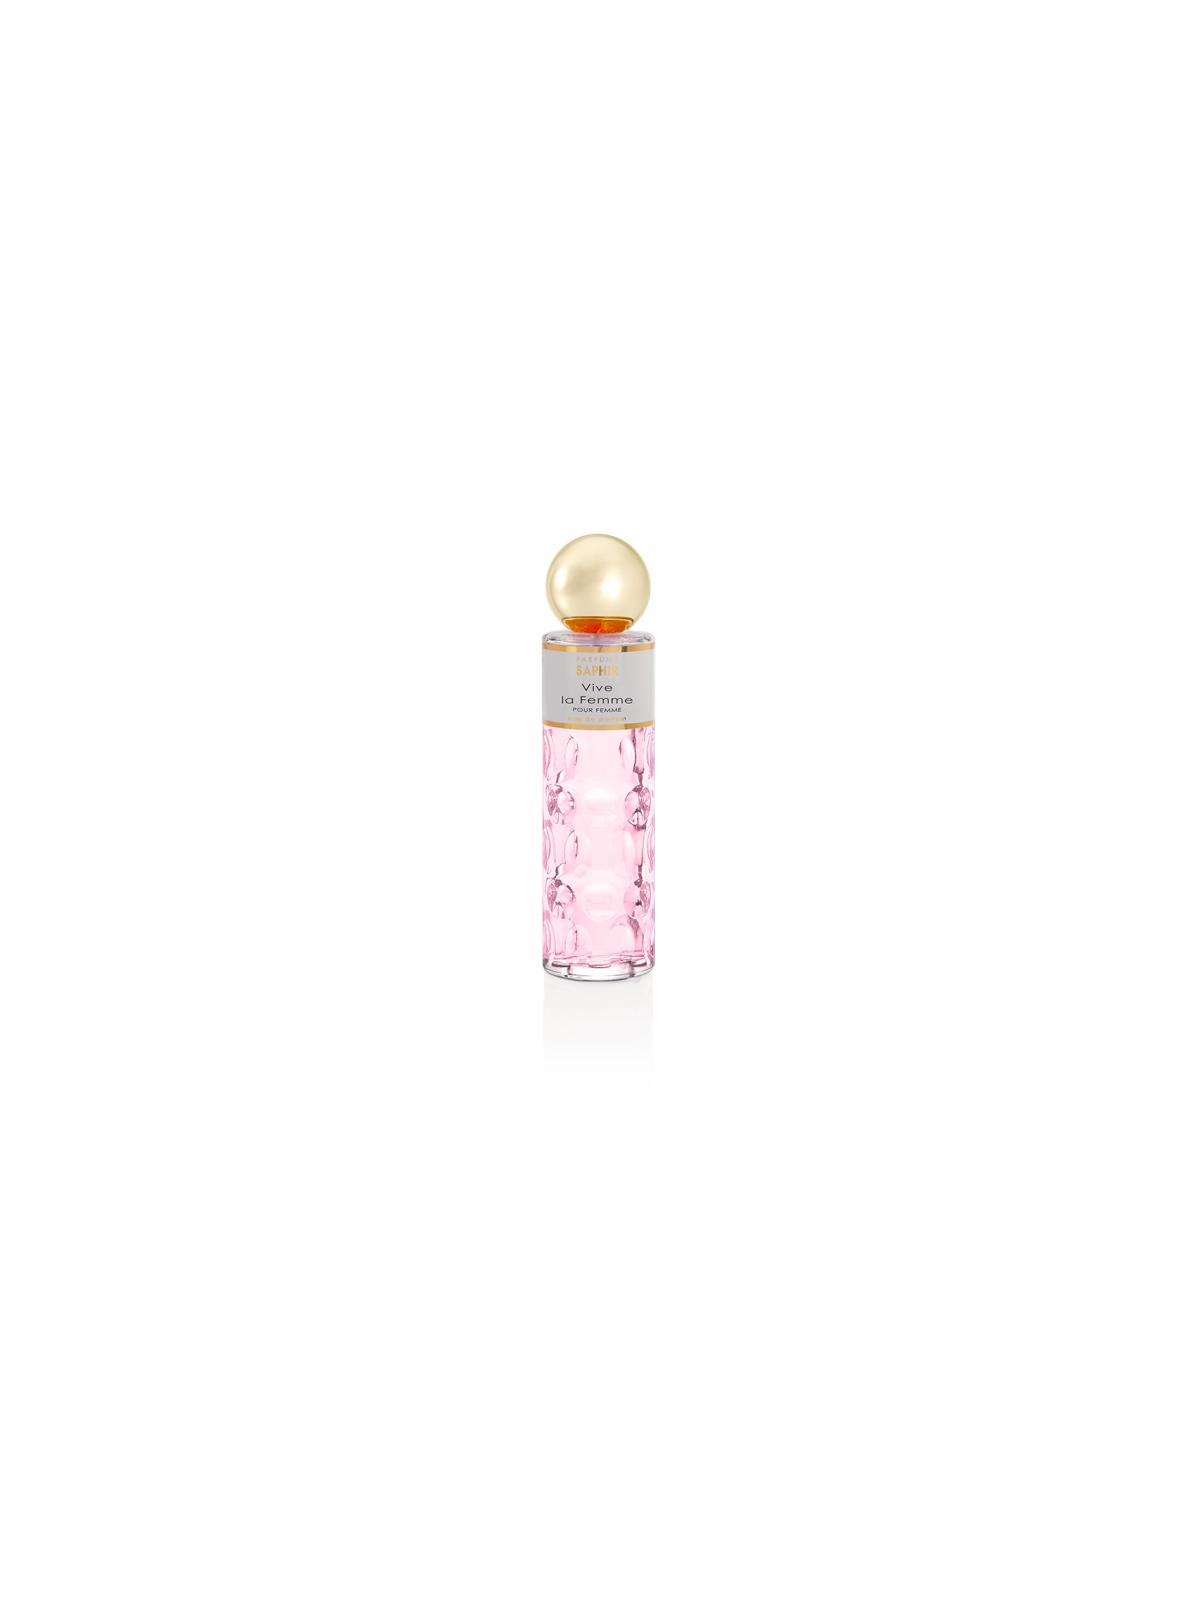 Comprar Perfume SAPHIR Vive la Femme 200ml. en Perfumes para mujer por sólo 13,90 € o un precio específico de 13,90 € en Thalie Care